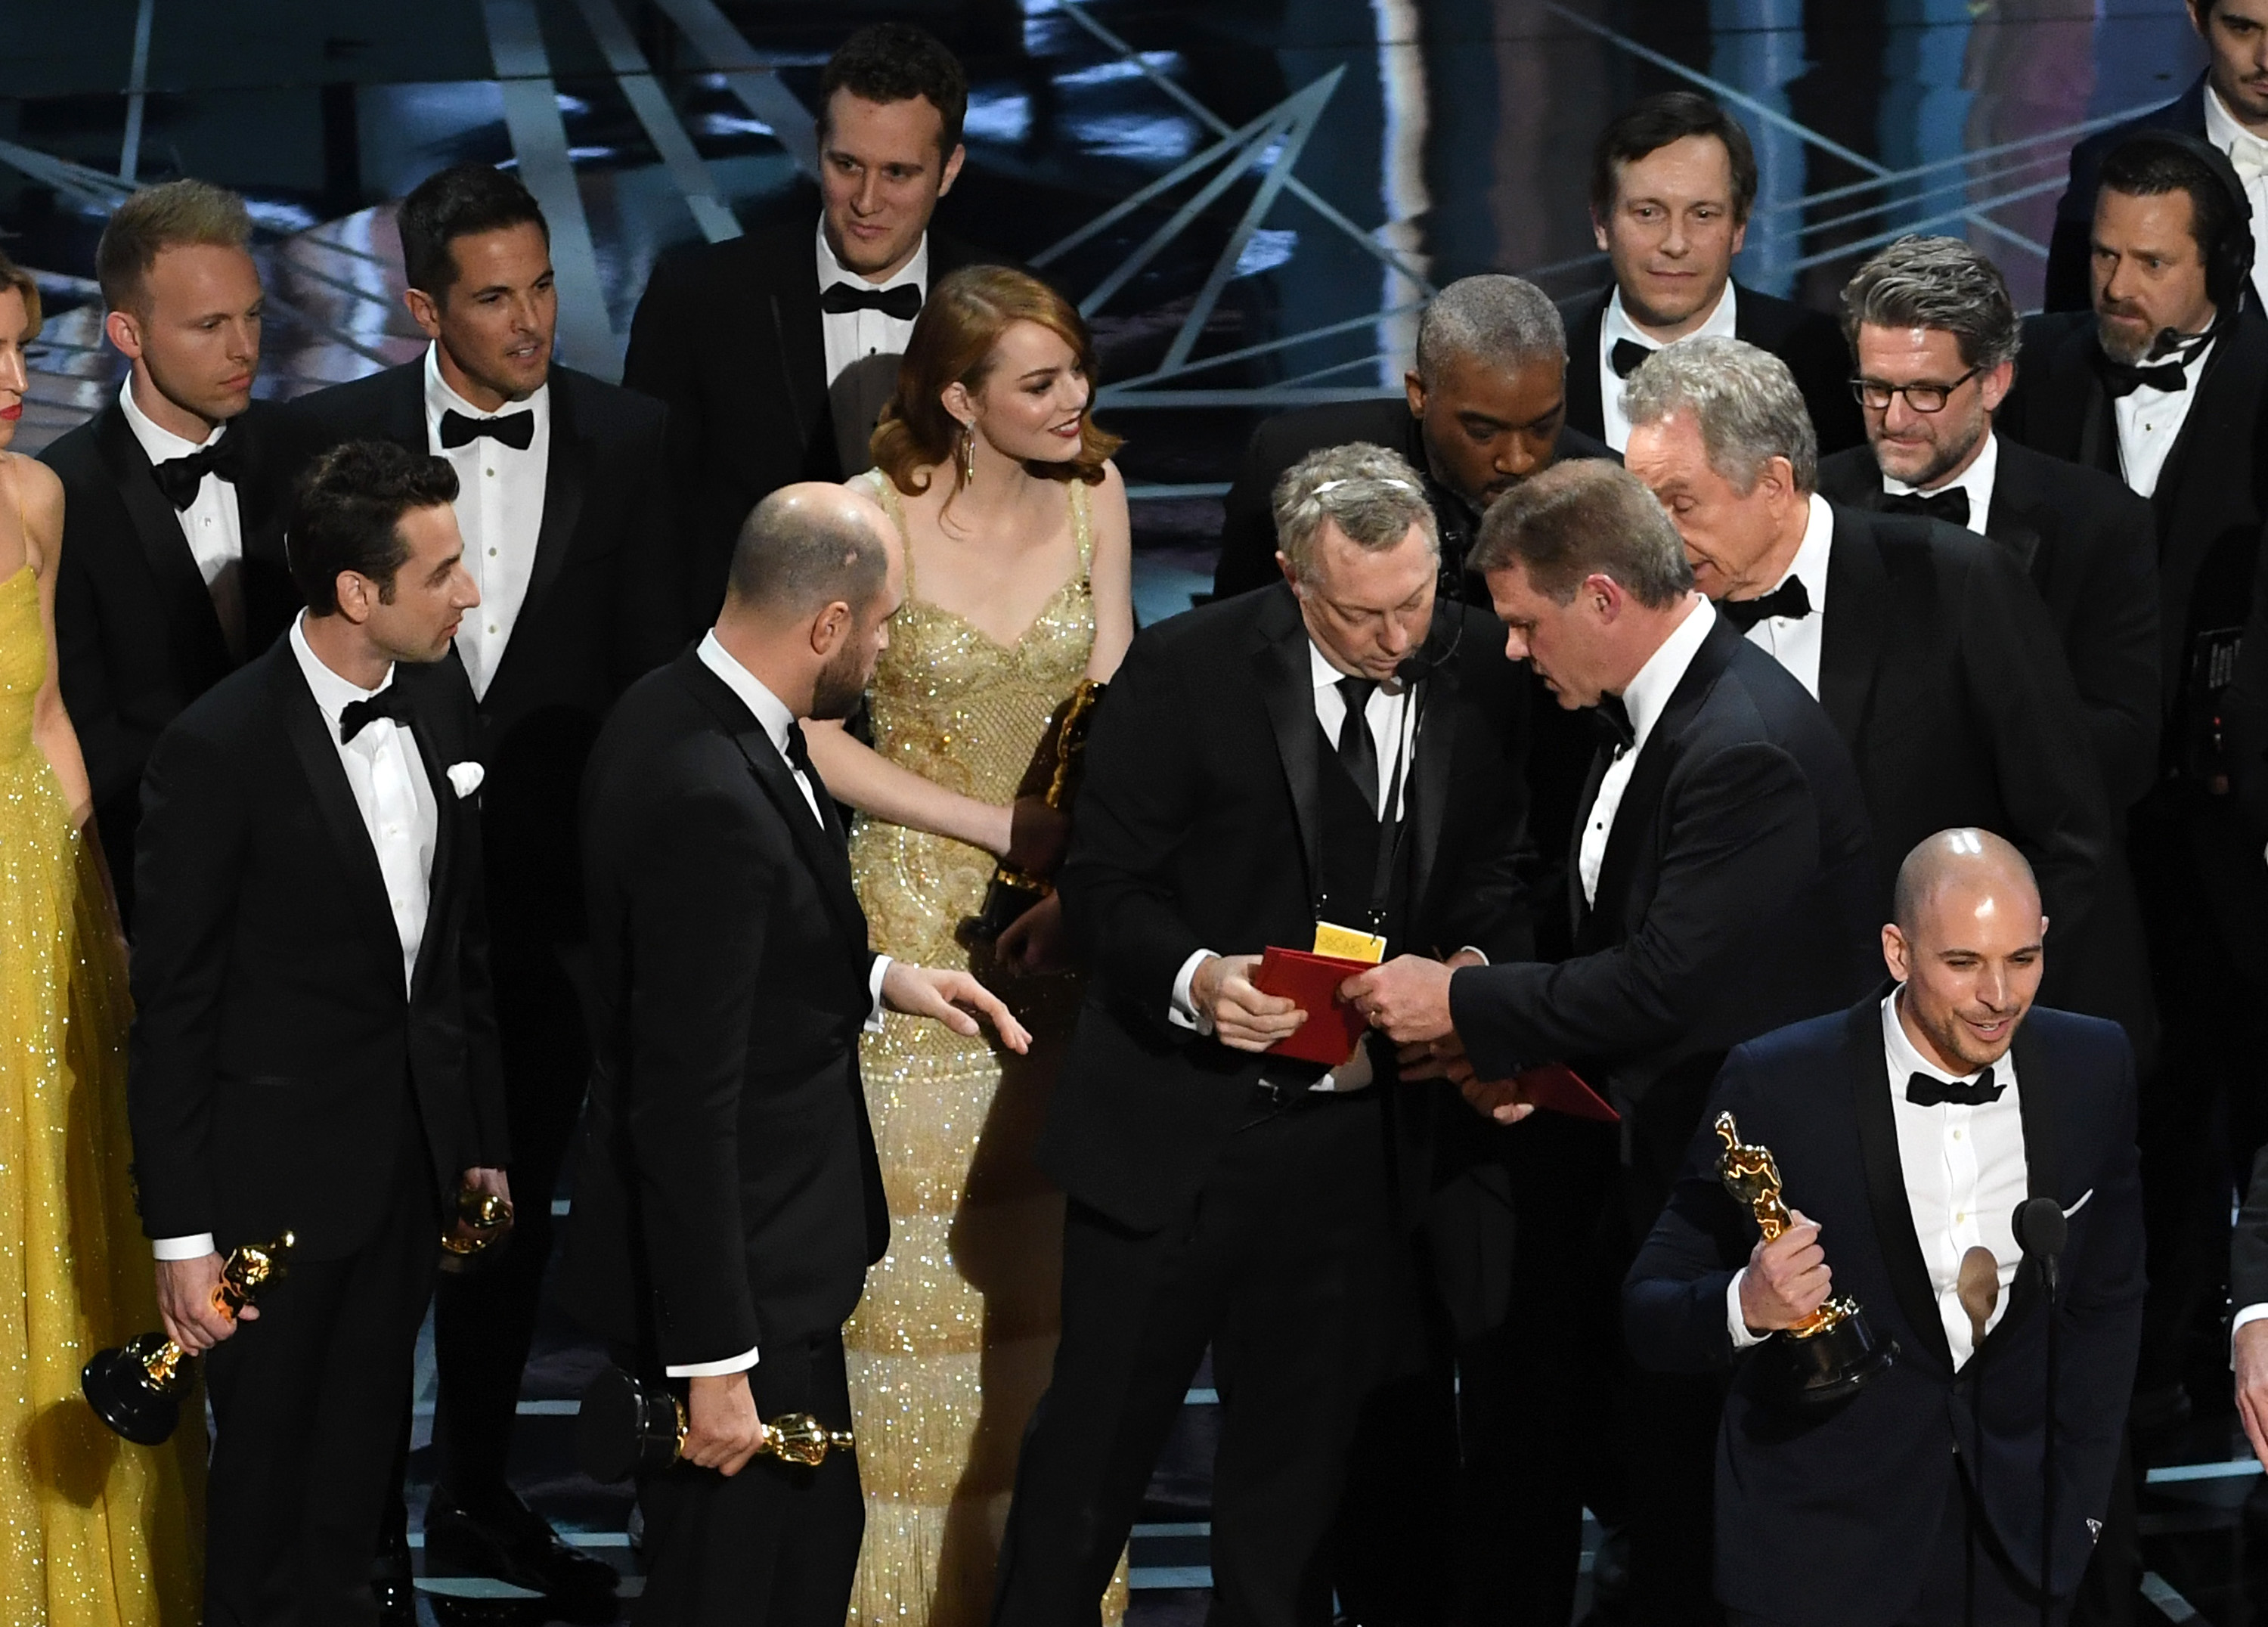 Sie halten die wichtigste Filmtrophäe der Welt in der Hand. Doch dann stellt sich heraus: Nicht „La La Land“ gewinnt den Oscar als bester Film, sondern „Moonlight“. So macht sich das im Netz über die peinliche Panne lustig.